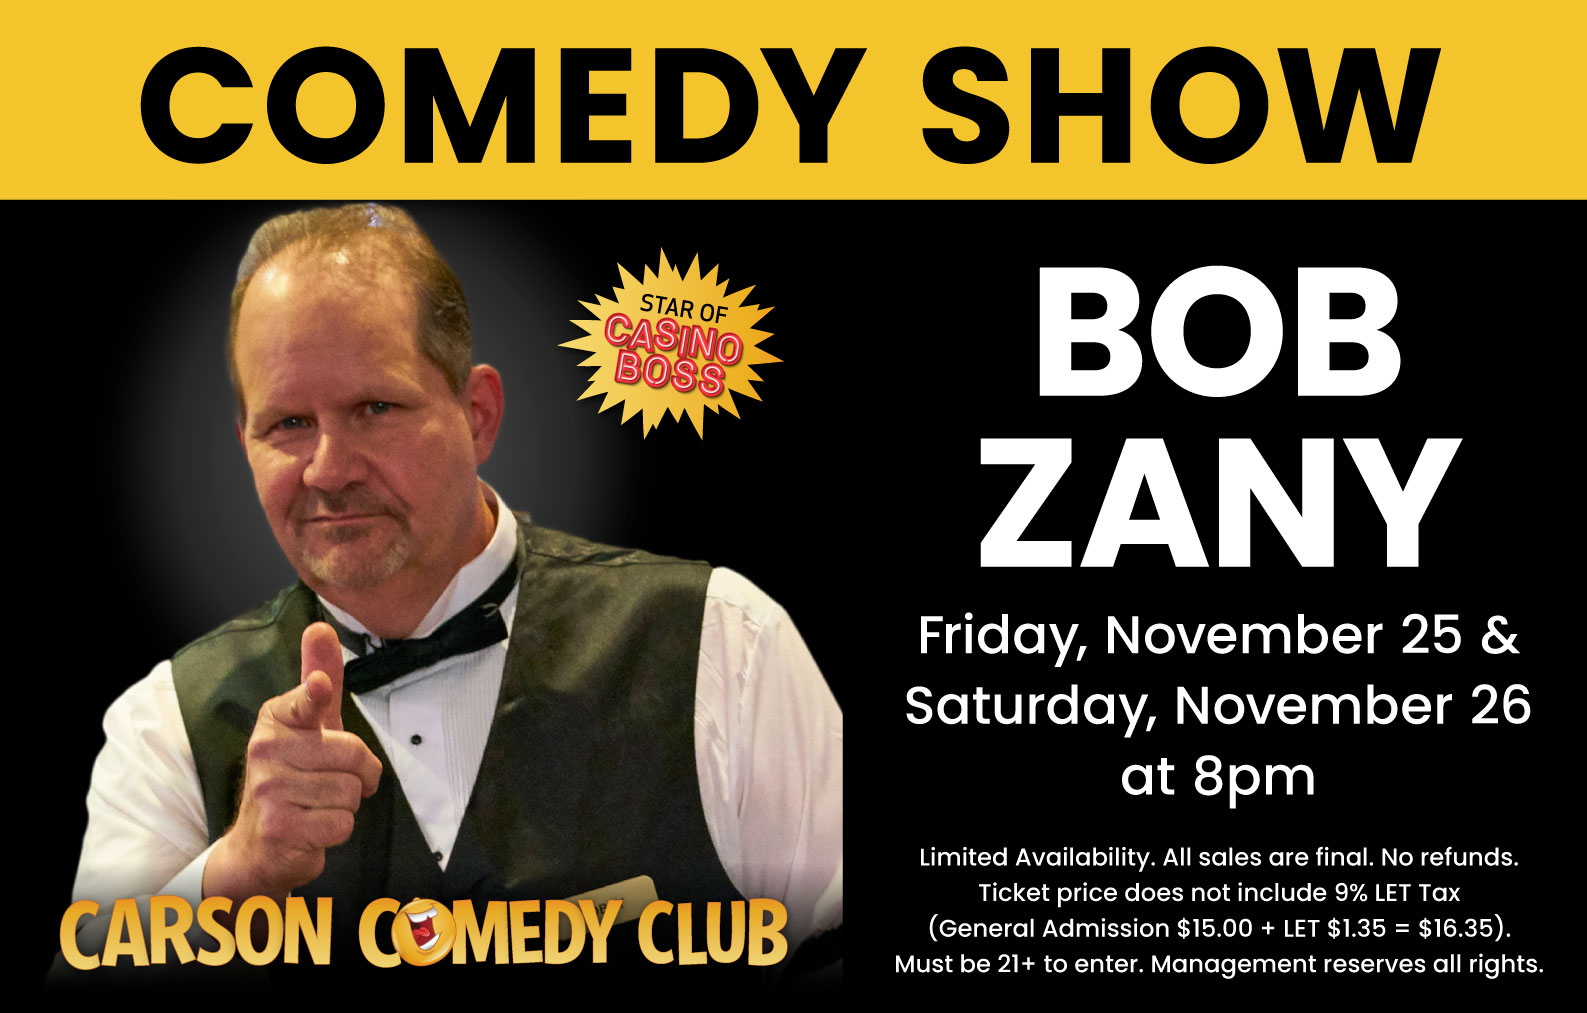 Bob Zany - Comedy